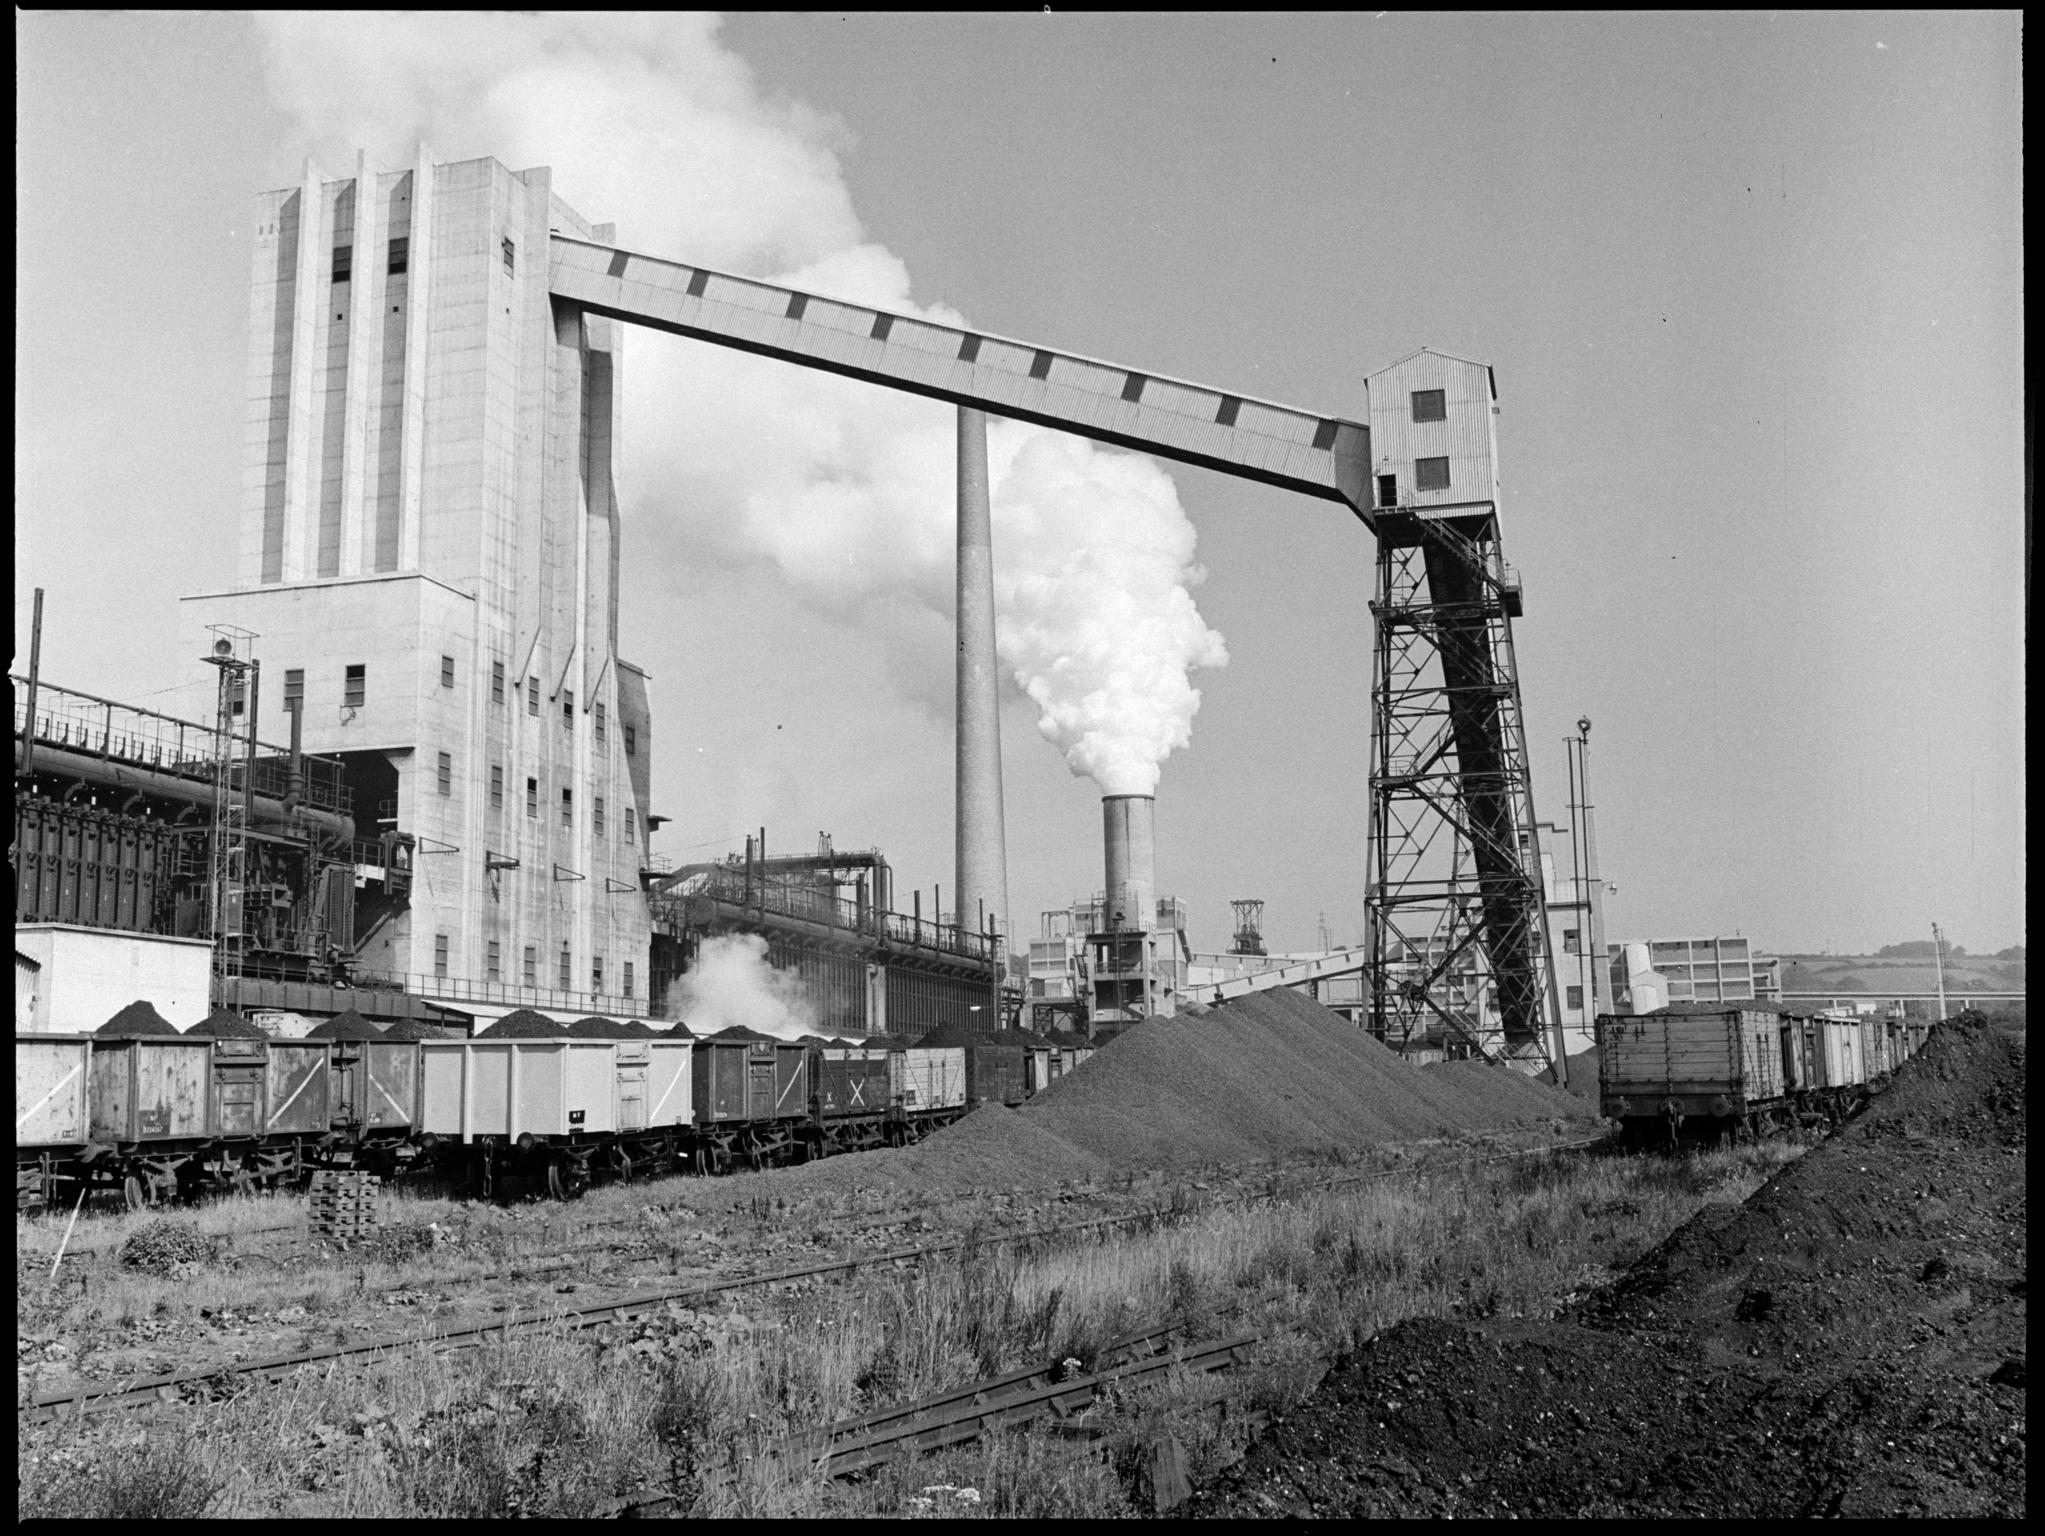 Hafodyrynys Colliery, film negative